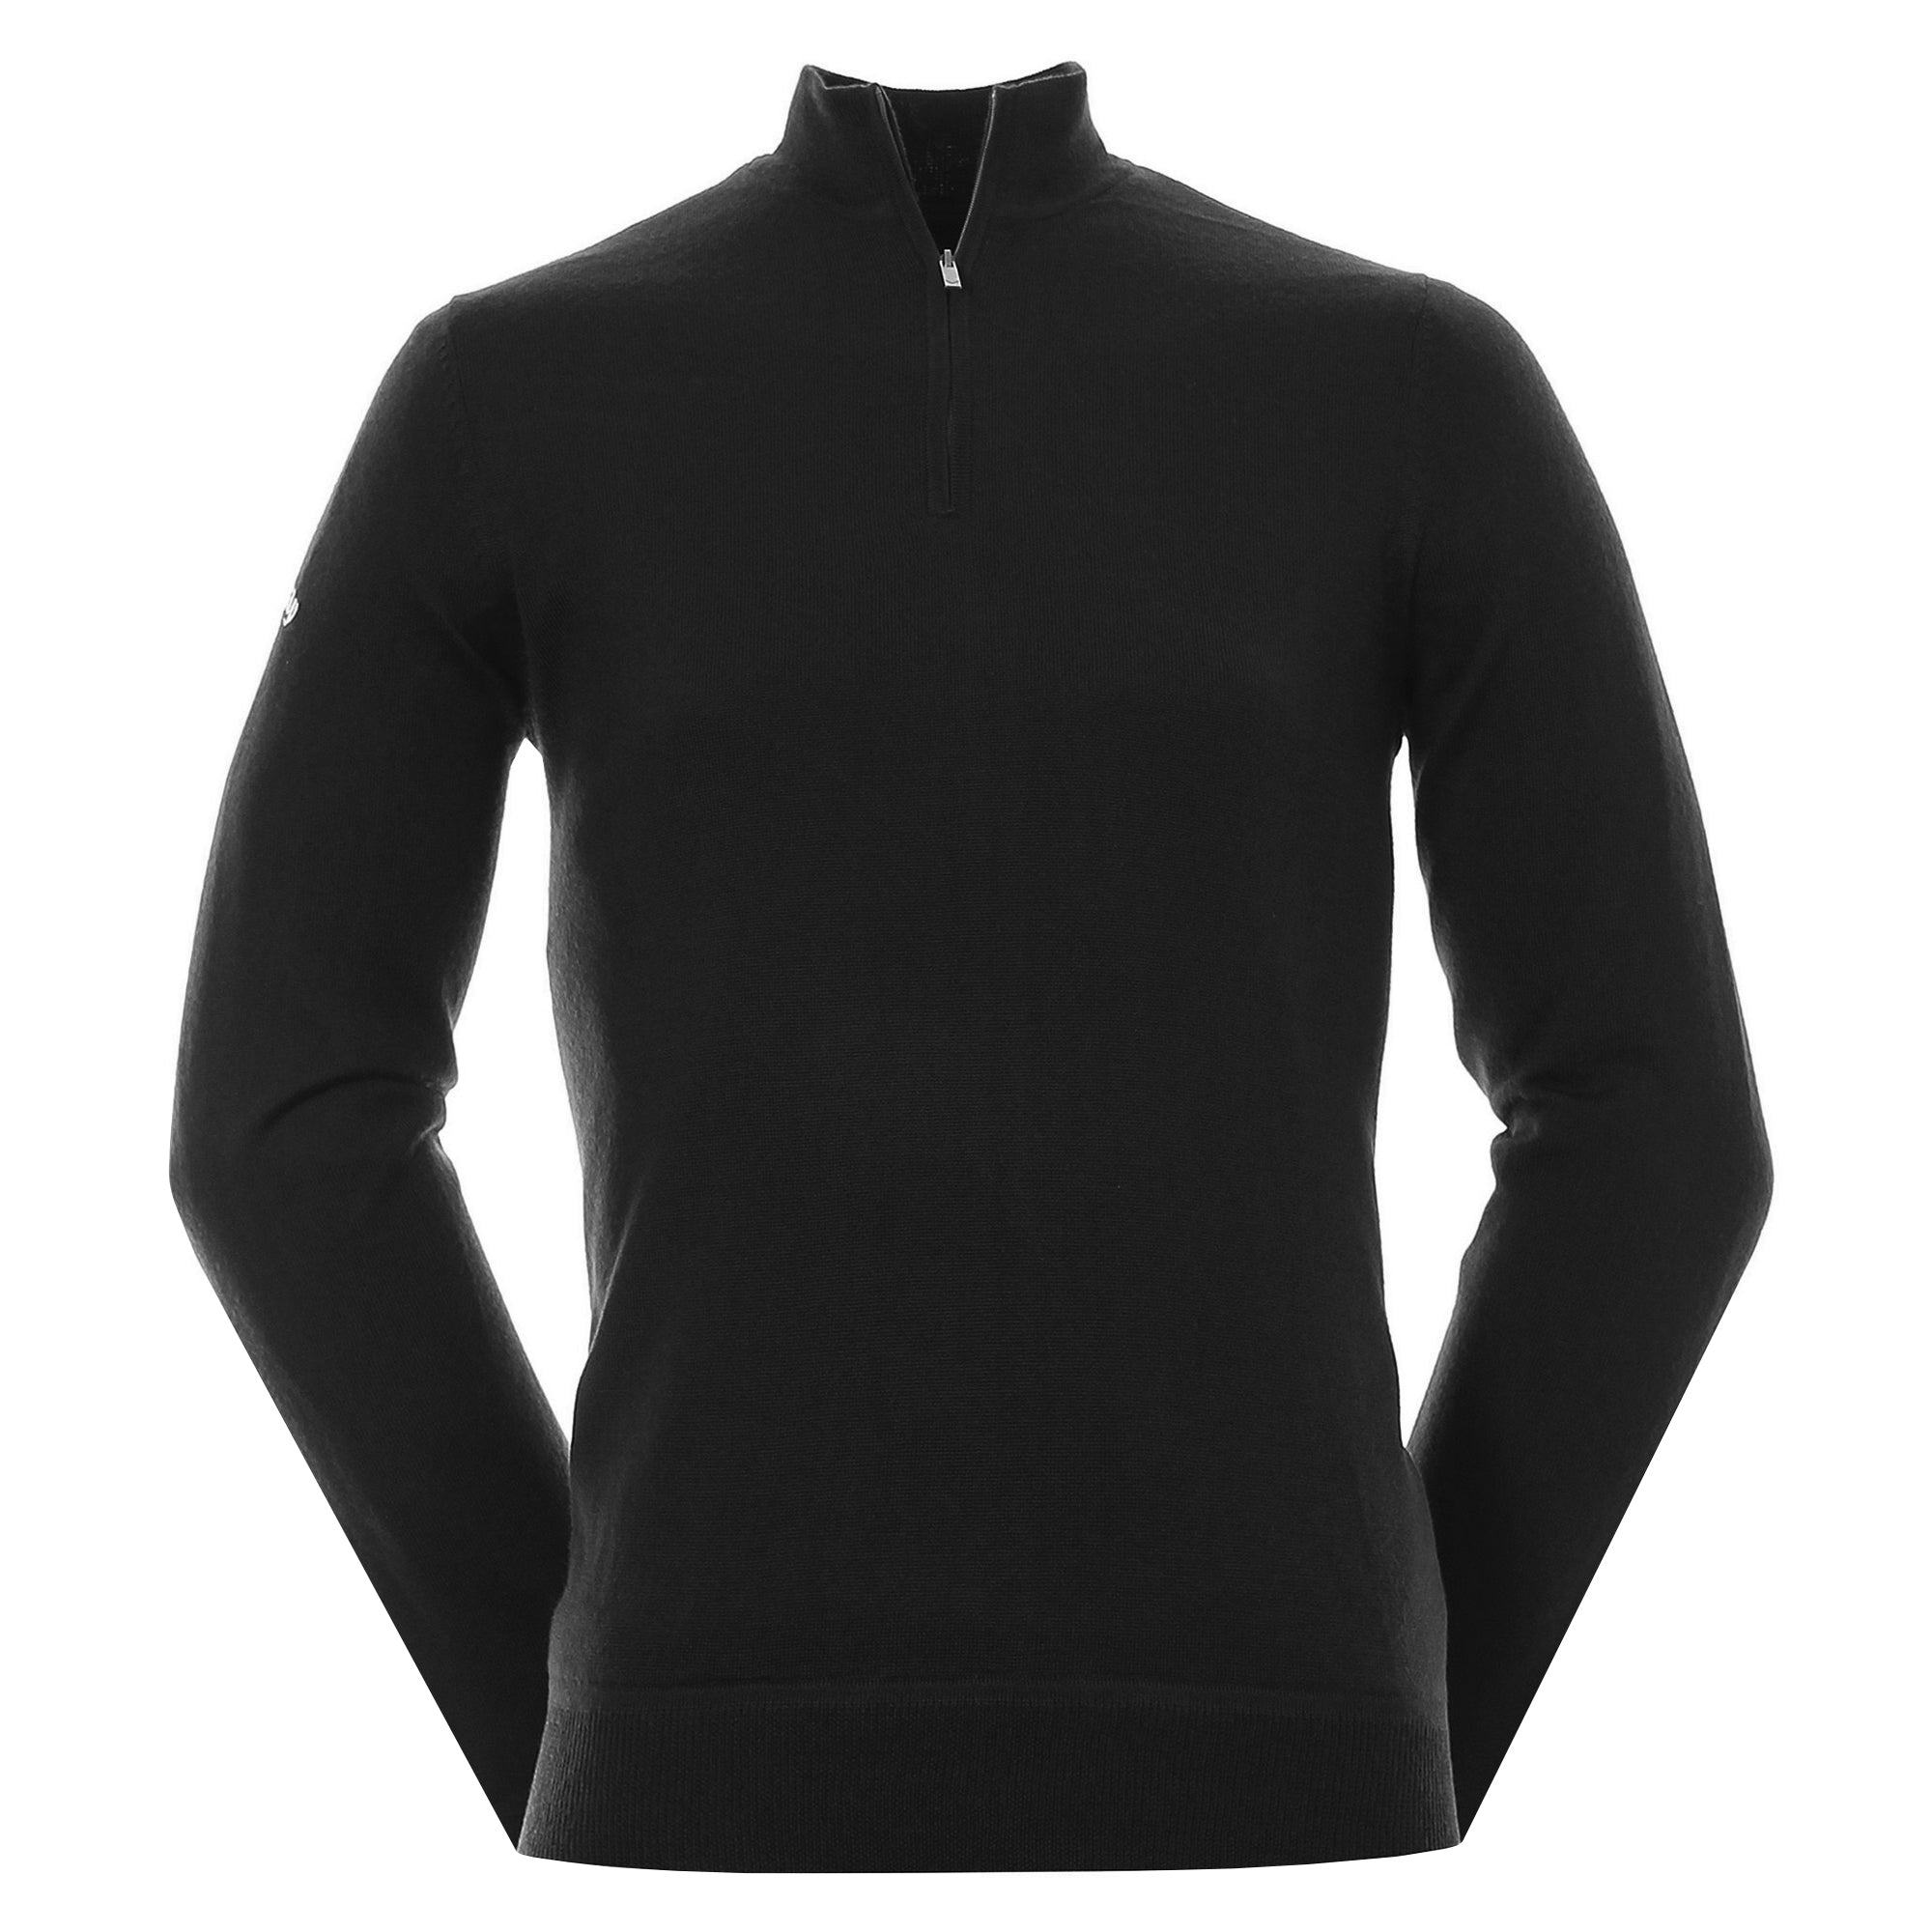 callaway-golf-windstopper-1-4-zip-sweater-cggf7079-black-ink